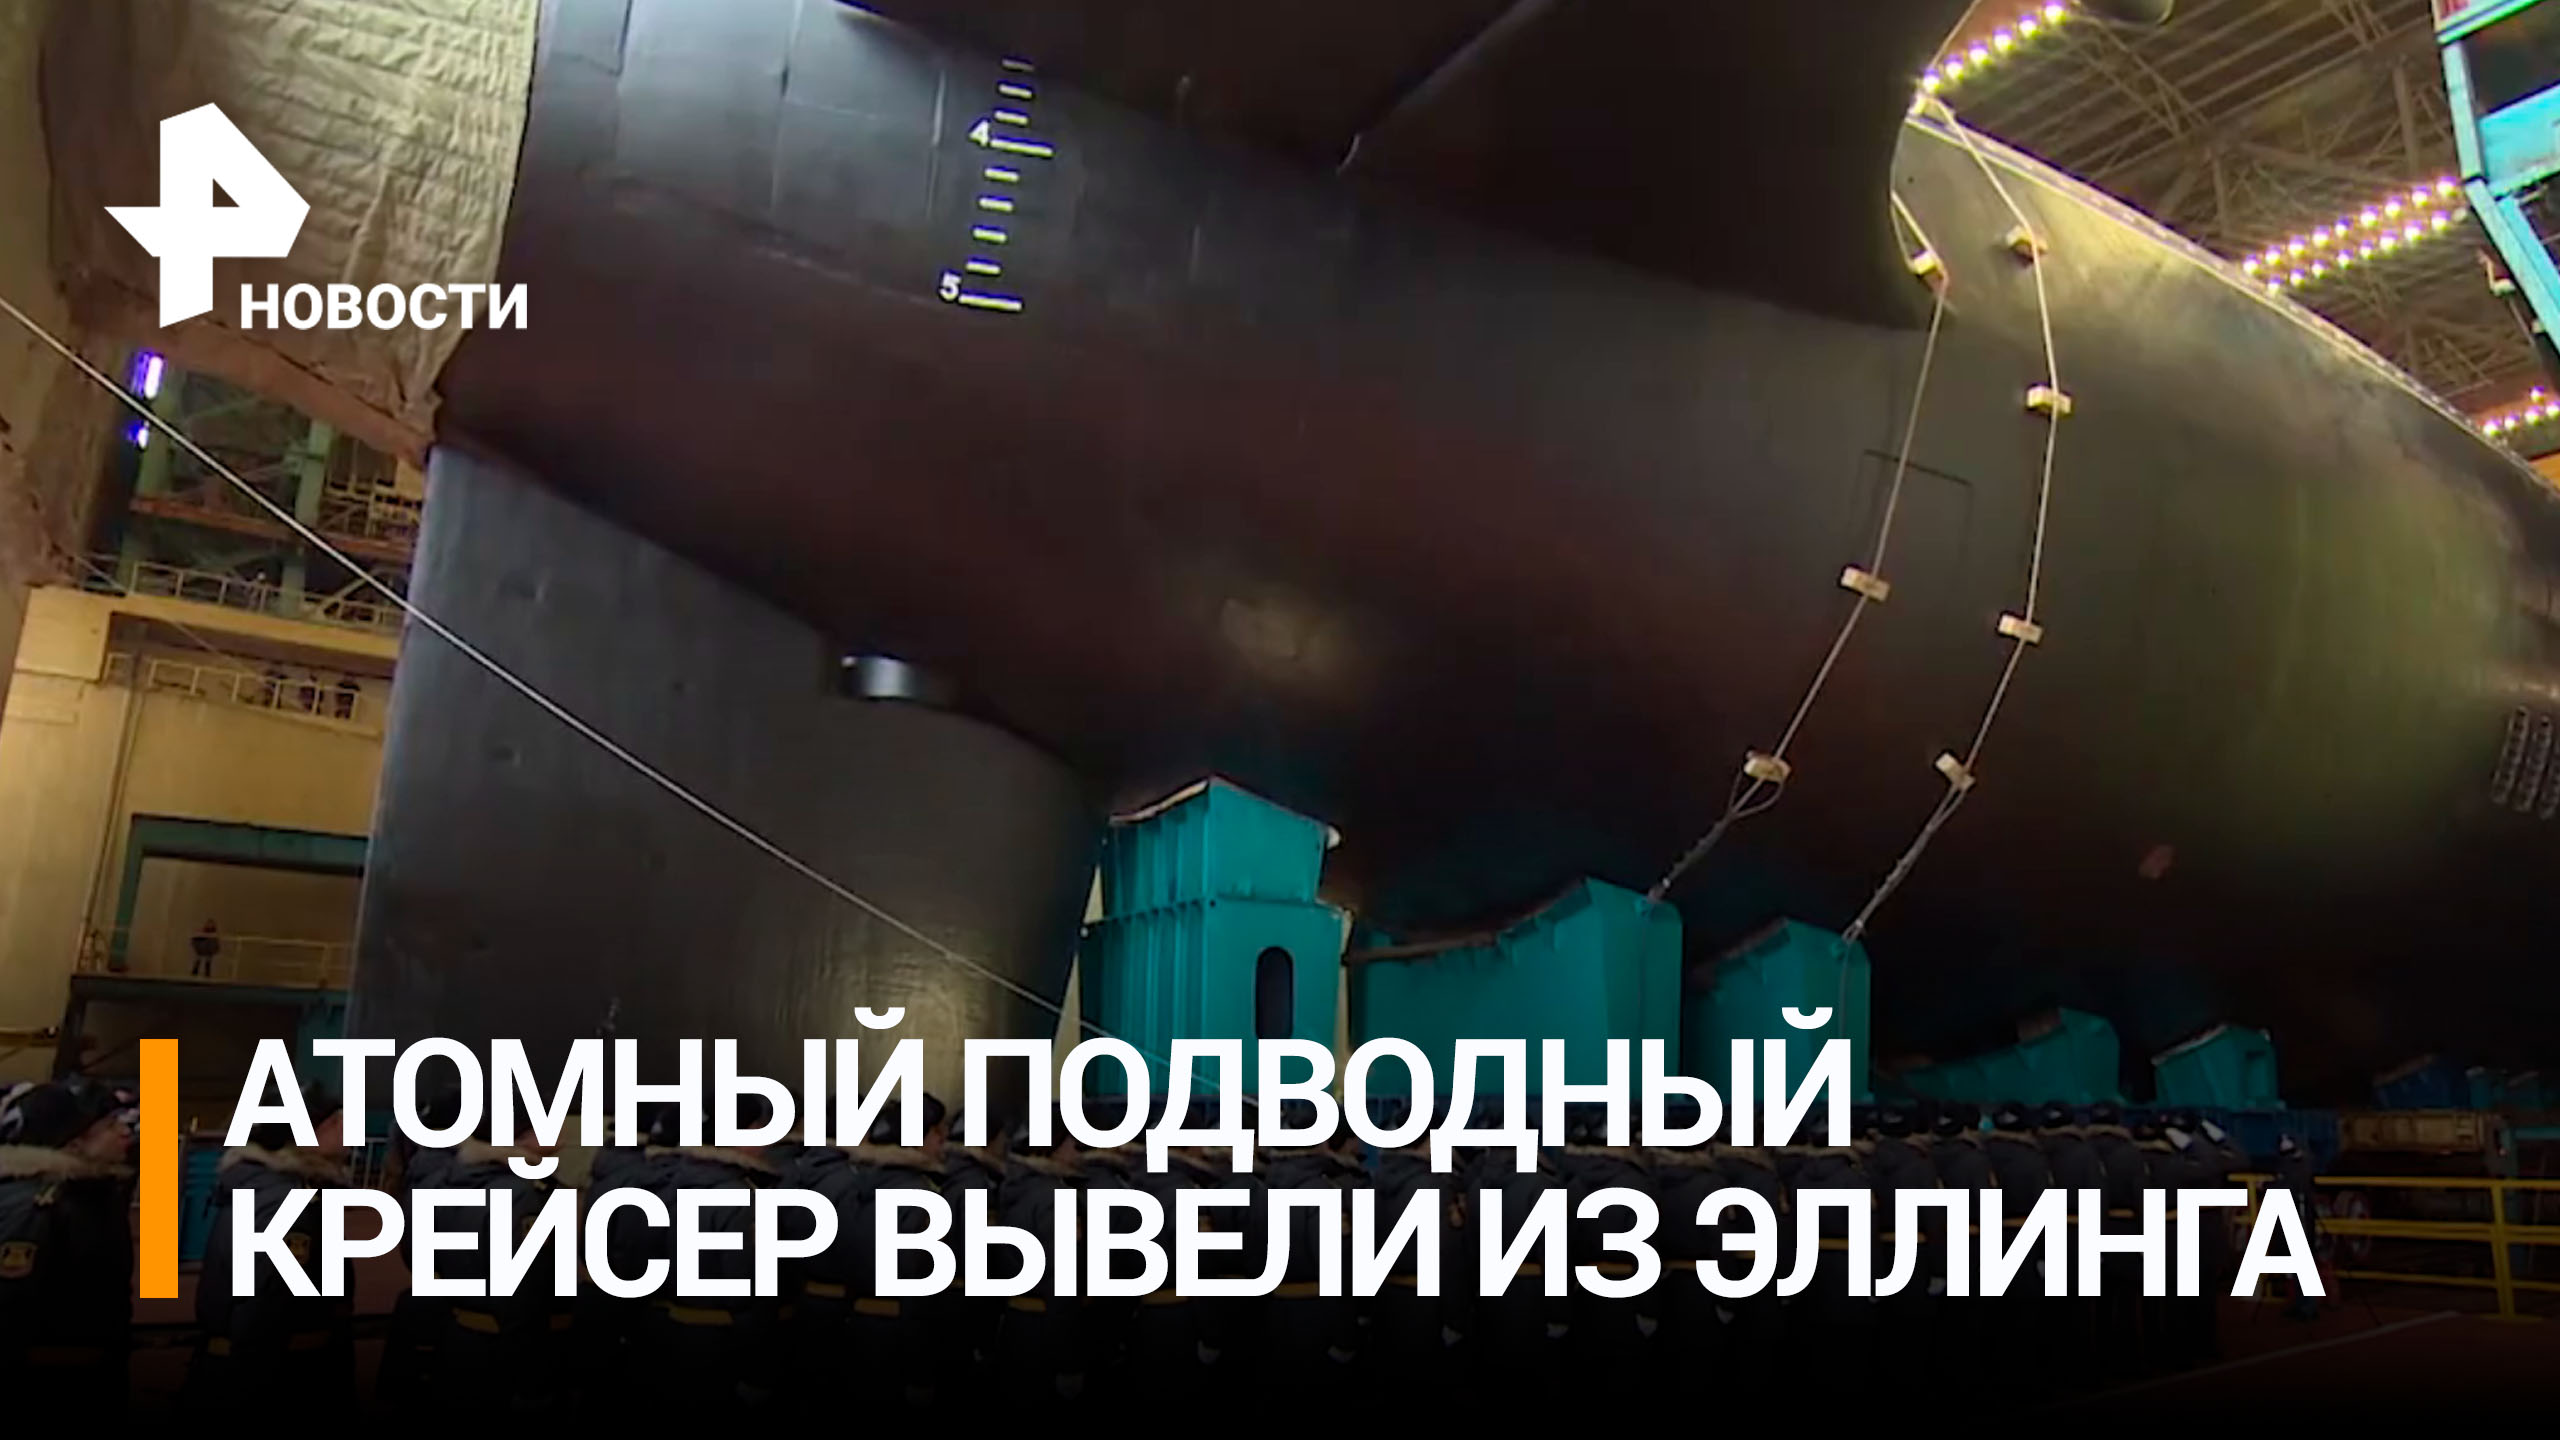 В Северодвинске вывели из эллинга подводный крейсер "Князь Пожарский" / РЕН Новости